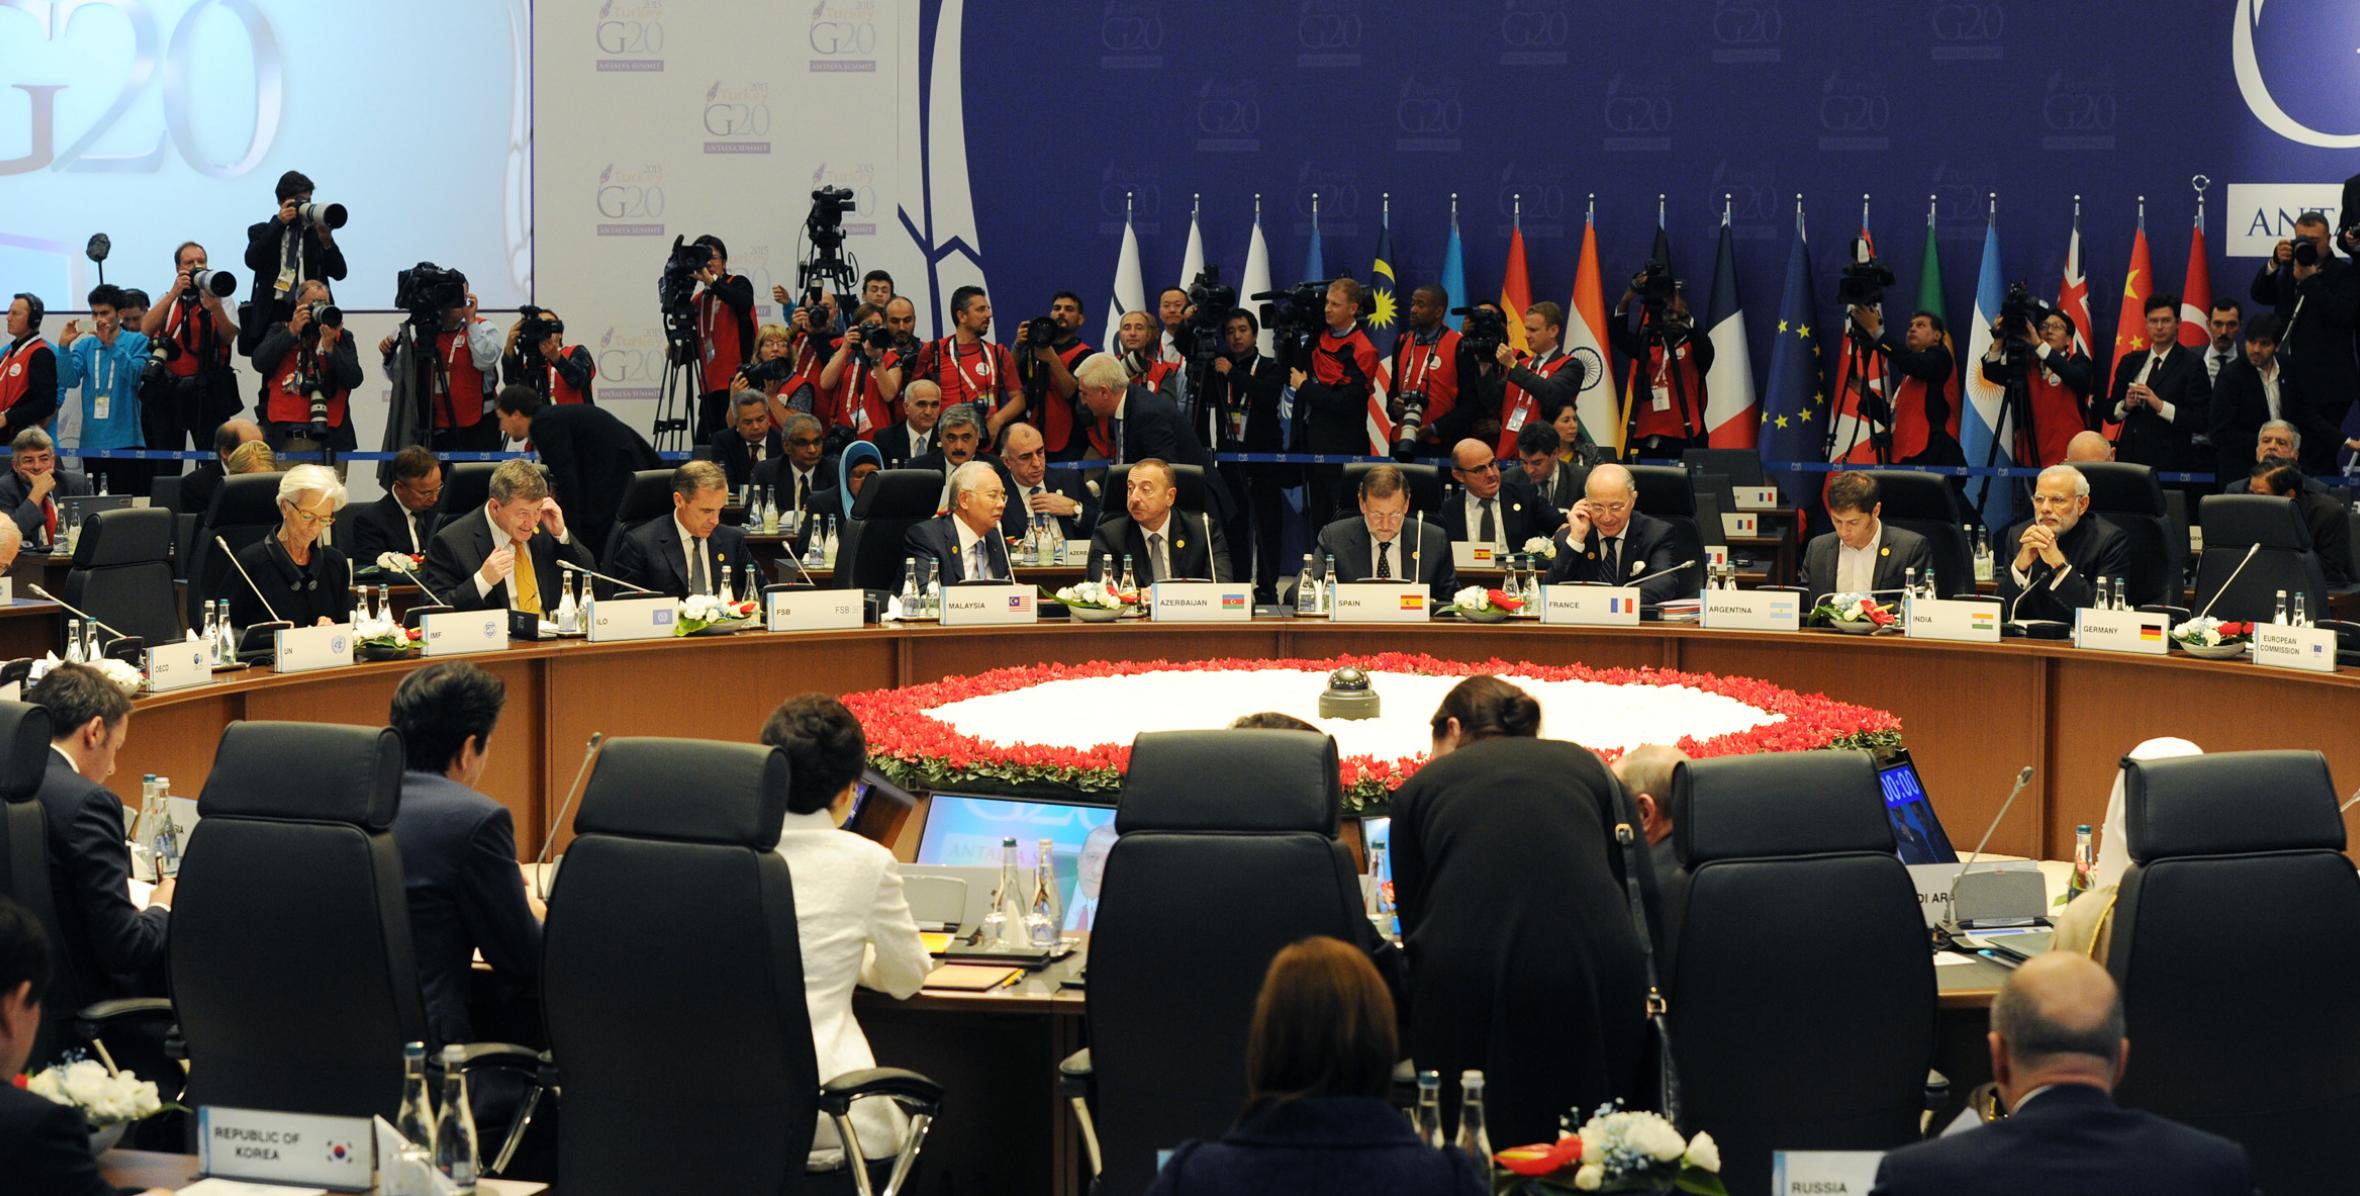 G20 Leaders Summit kicked off in Antalya